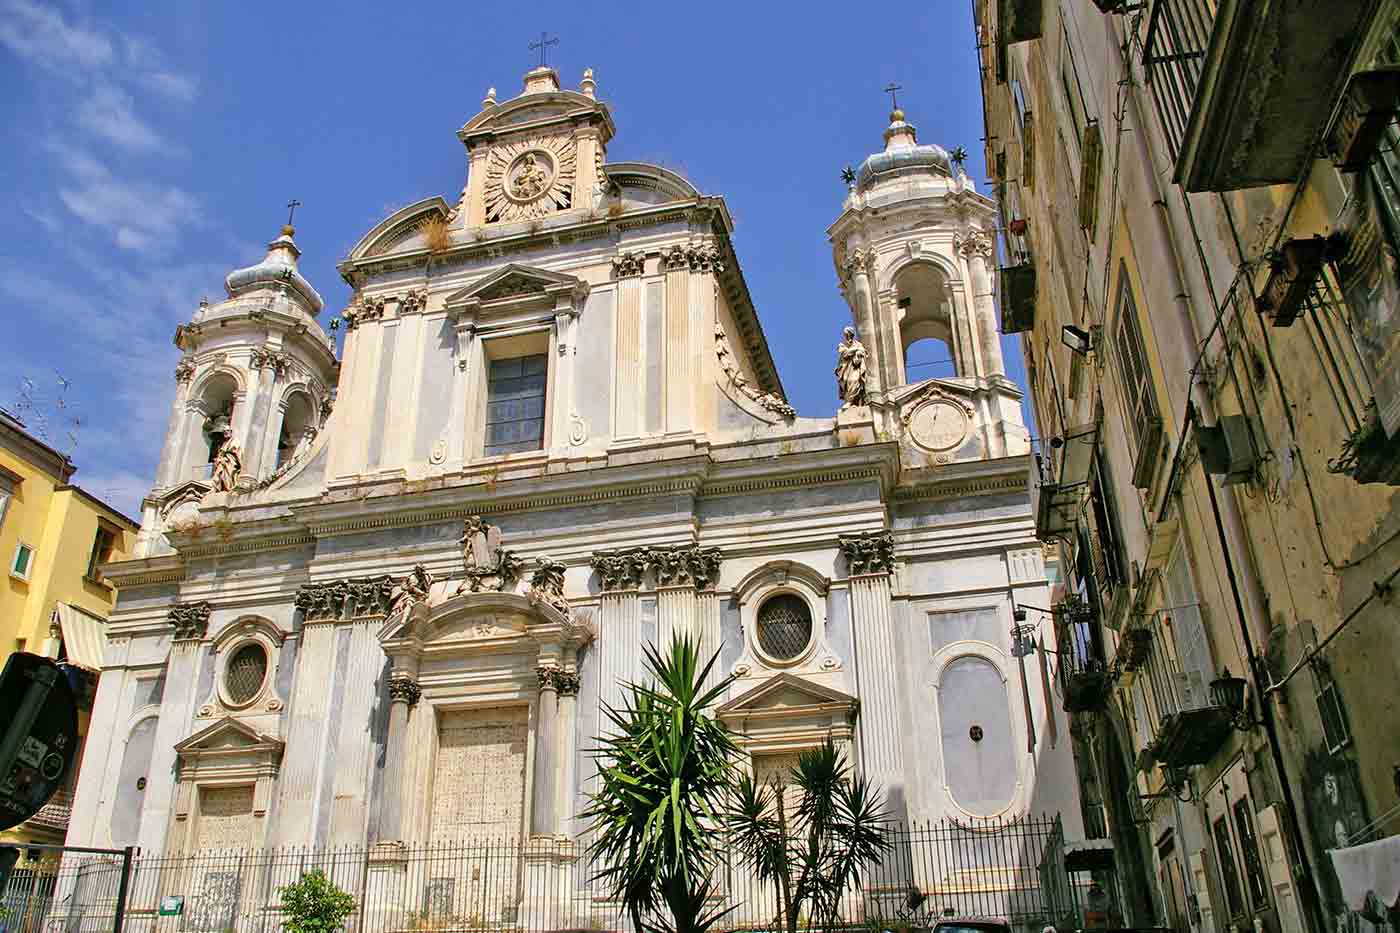 Church of the Girolamini